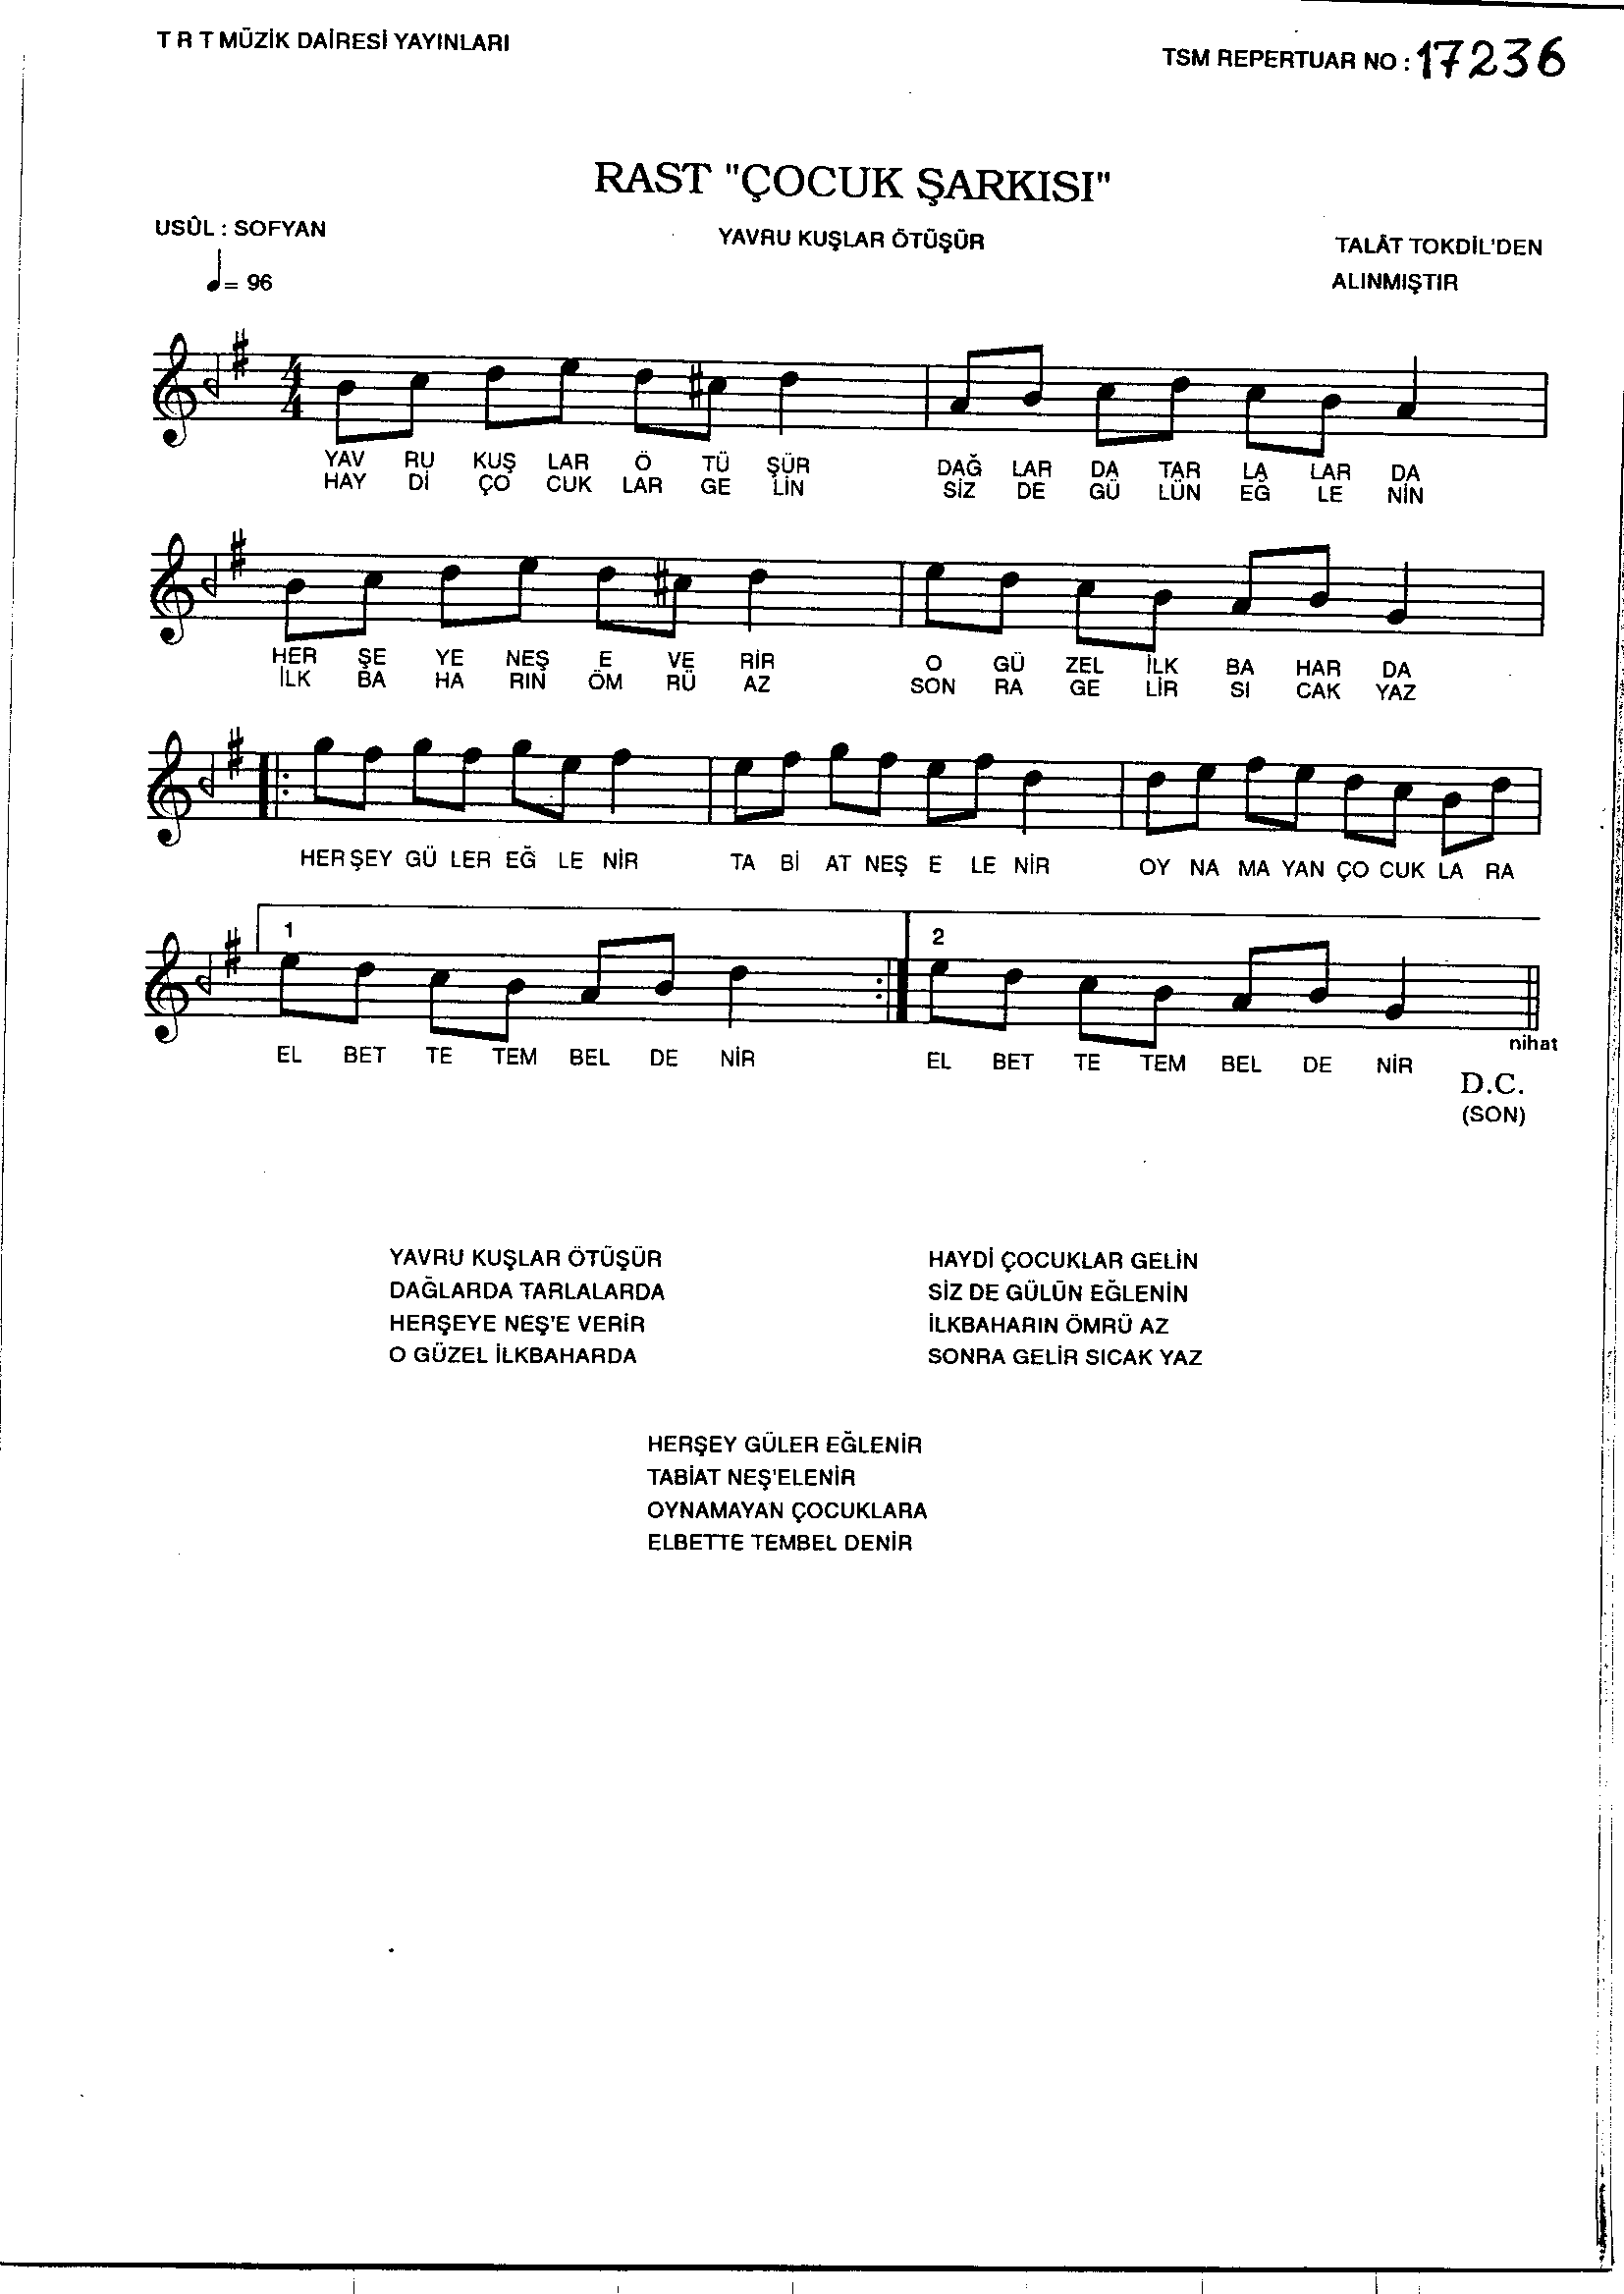 Rast - Çocuk Şarkısı - (Talât Tokdil'den alınmıştır) - Sayfa 1